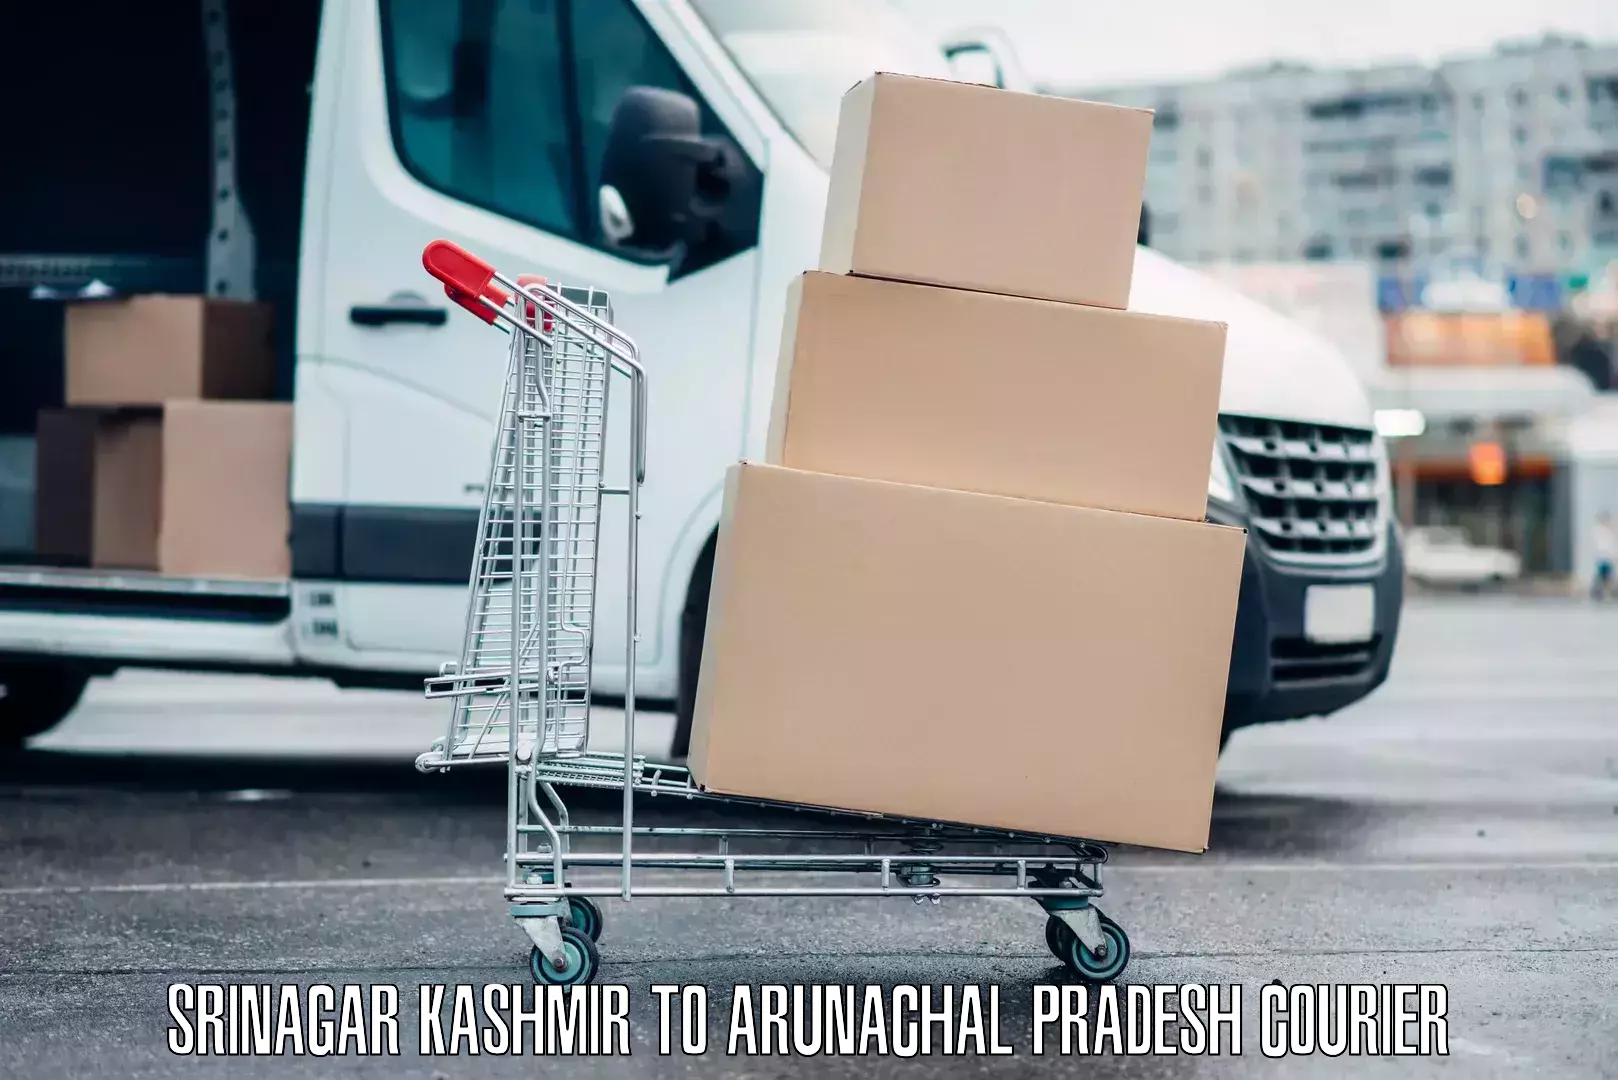 Luggage shipment specialists Srinagar Kashmir to Arunachal Pradesh